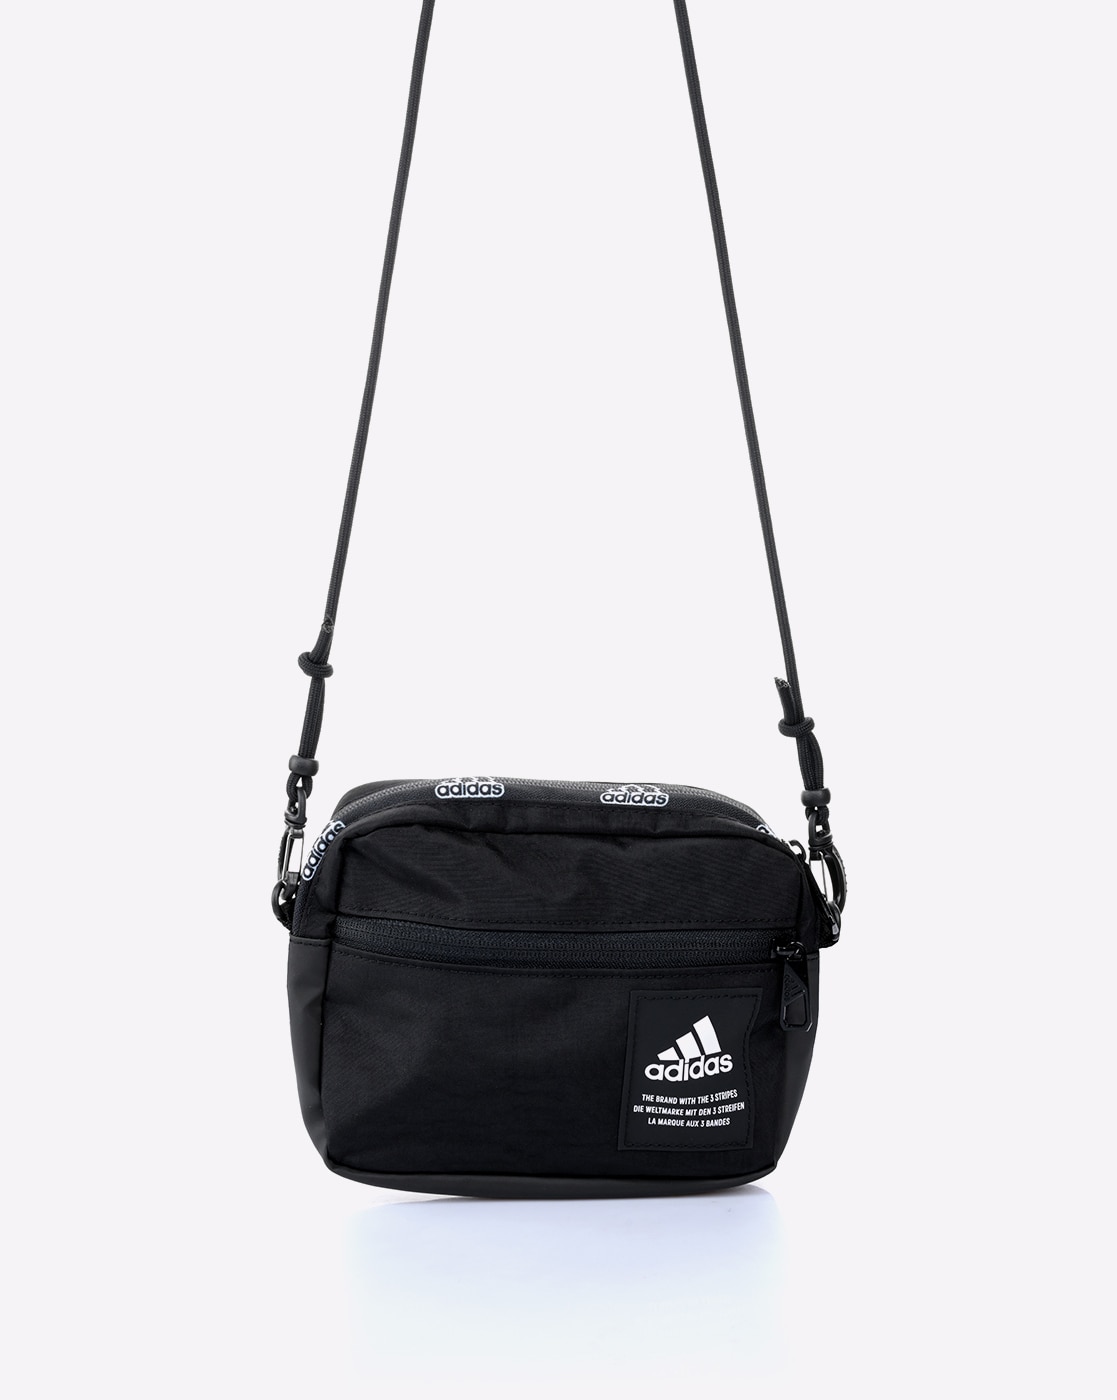 adidas Courtside Crossbody Bag - Black | Unisex Lifestyle | adidas US